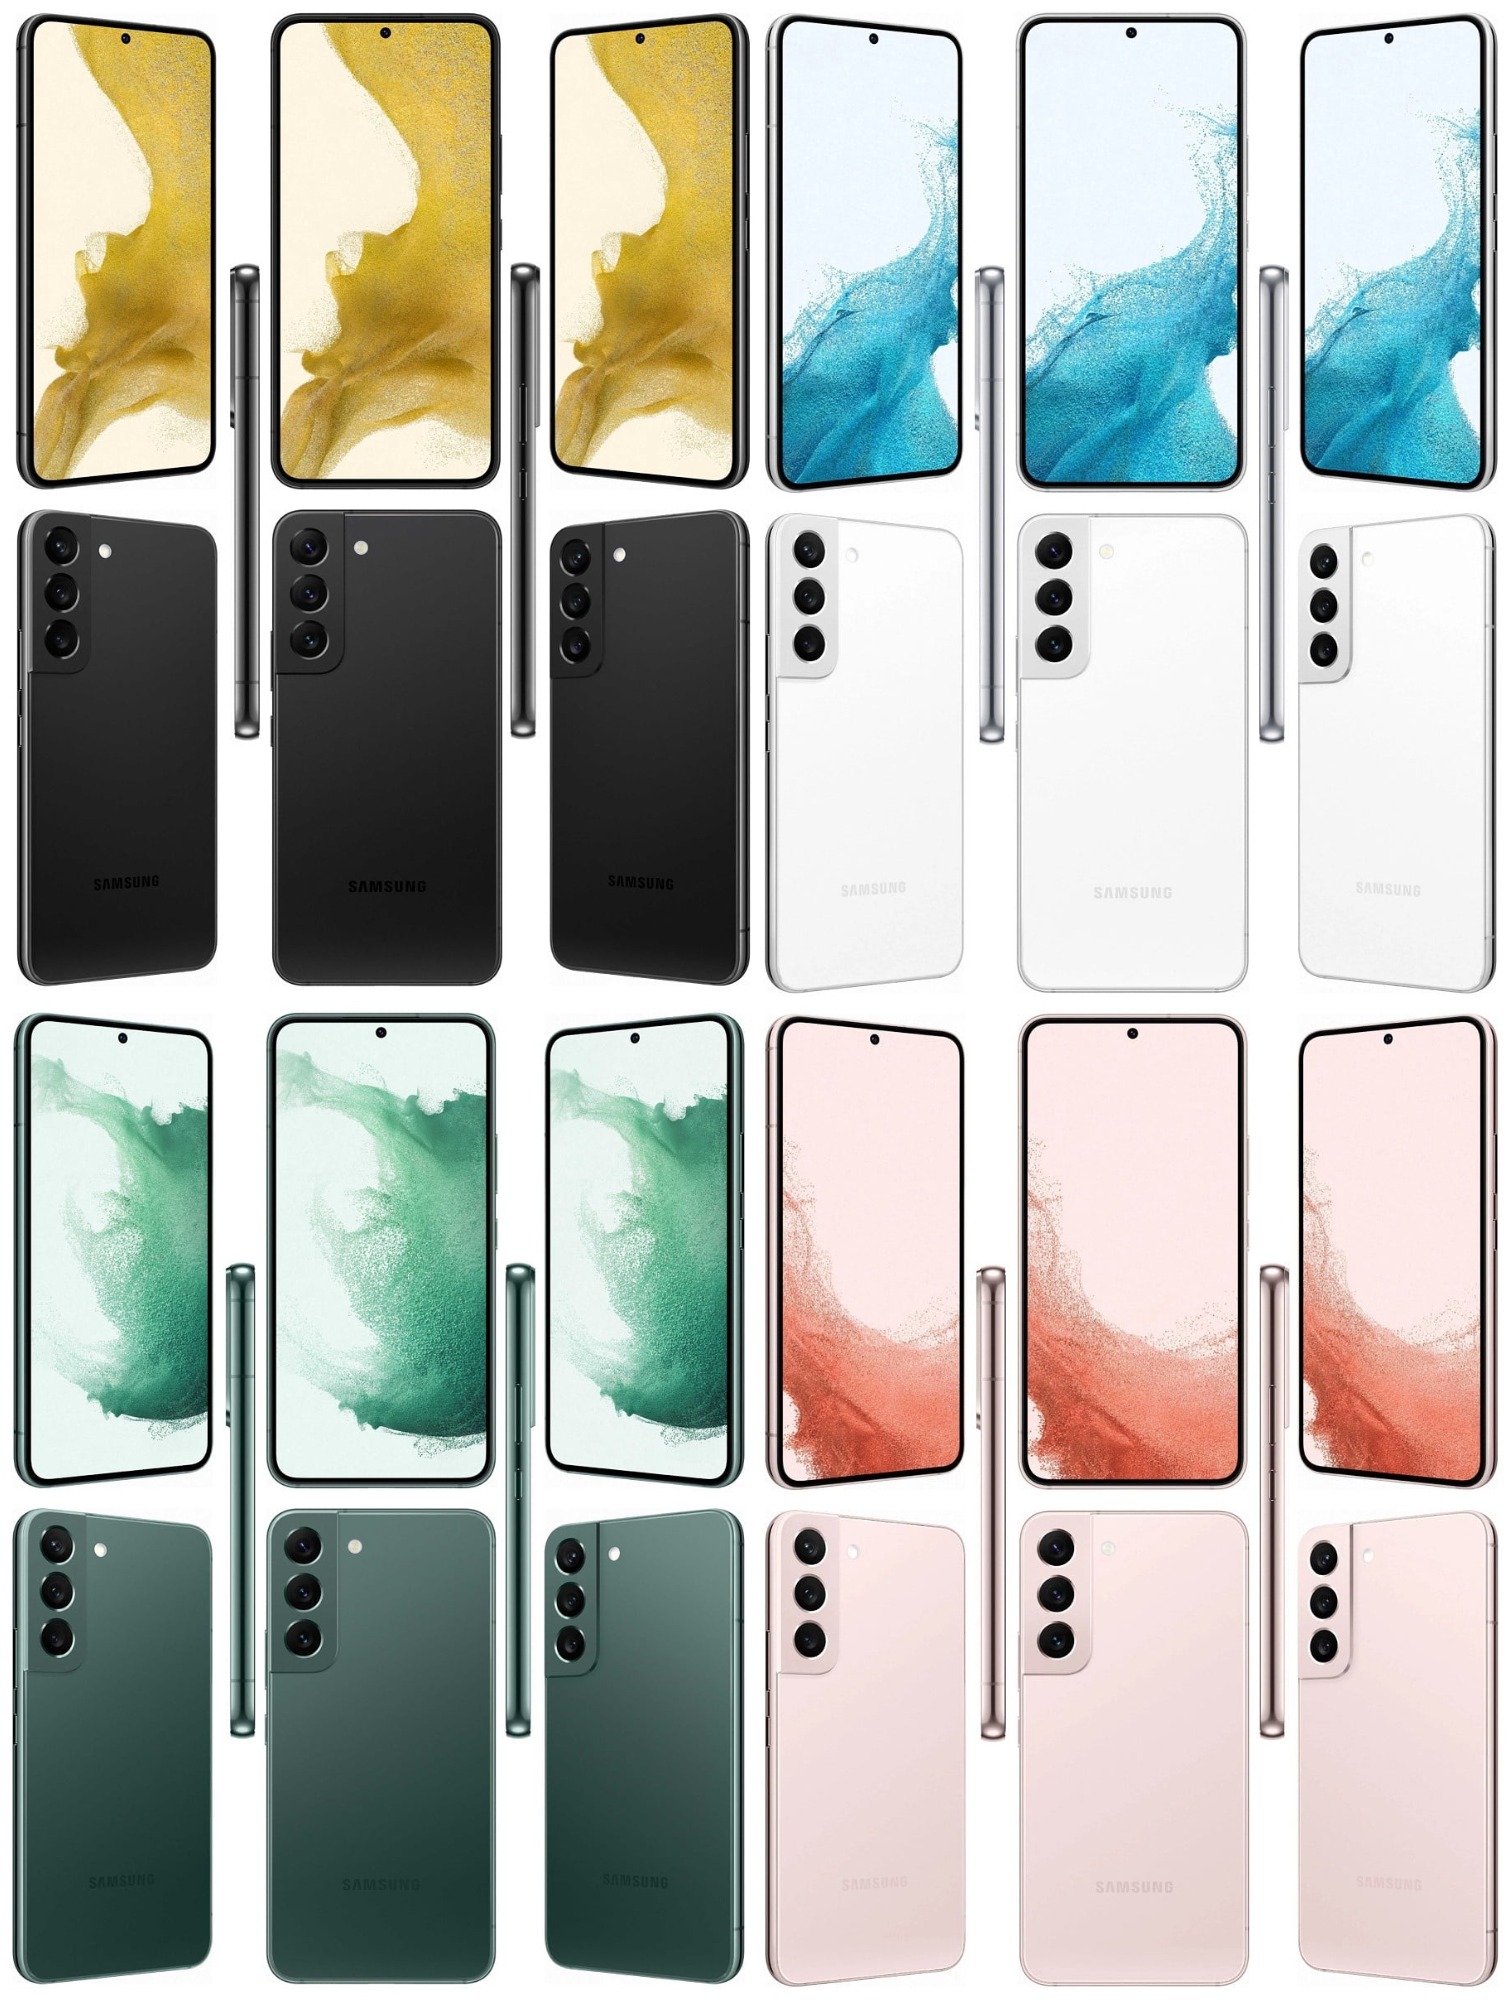 Samsung Galaxy S22 eri väreissä. Kuvat: Evan Blass / Twitter.